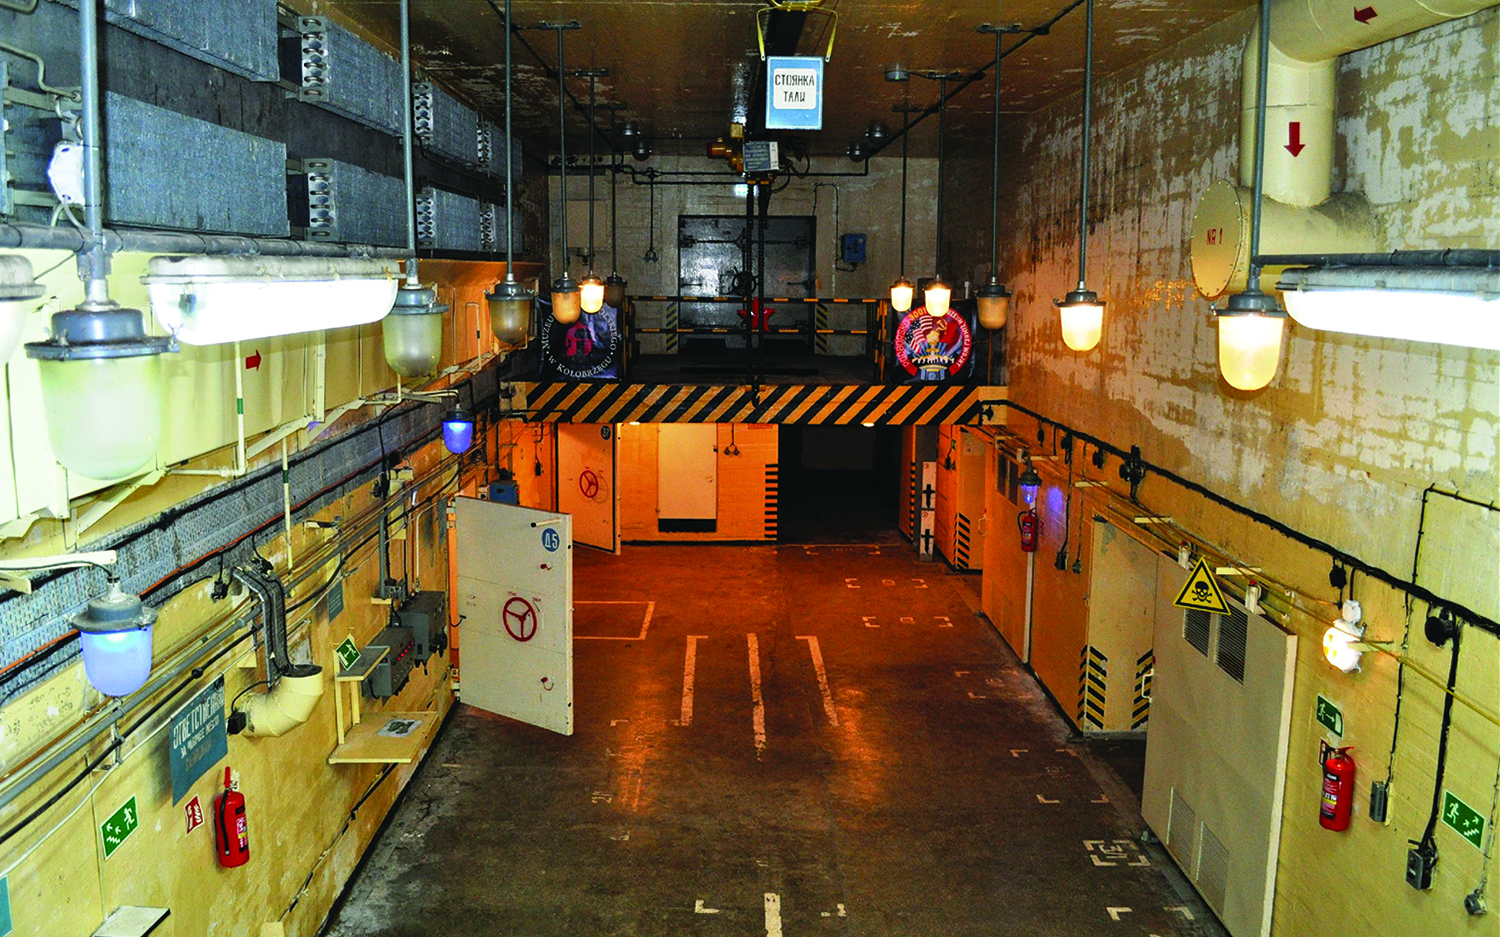 Bunkier w Podborsku;  w komorze głównej znajduje się dźwig i rampa załadunkowa oraz instalacja chłodnicza i wentylacyjna.  Cztery dodatkowe pomieszczenia przeznaczono do przechowywania głowic nuklearnych.